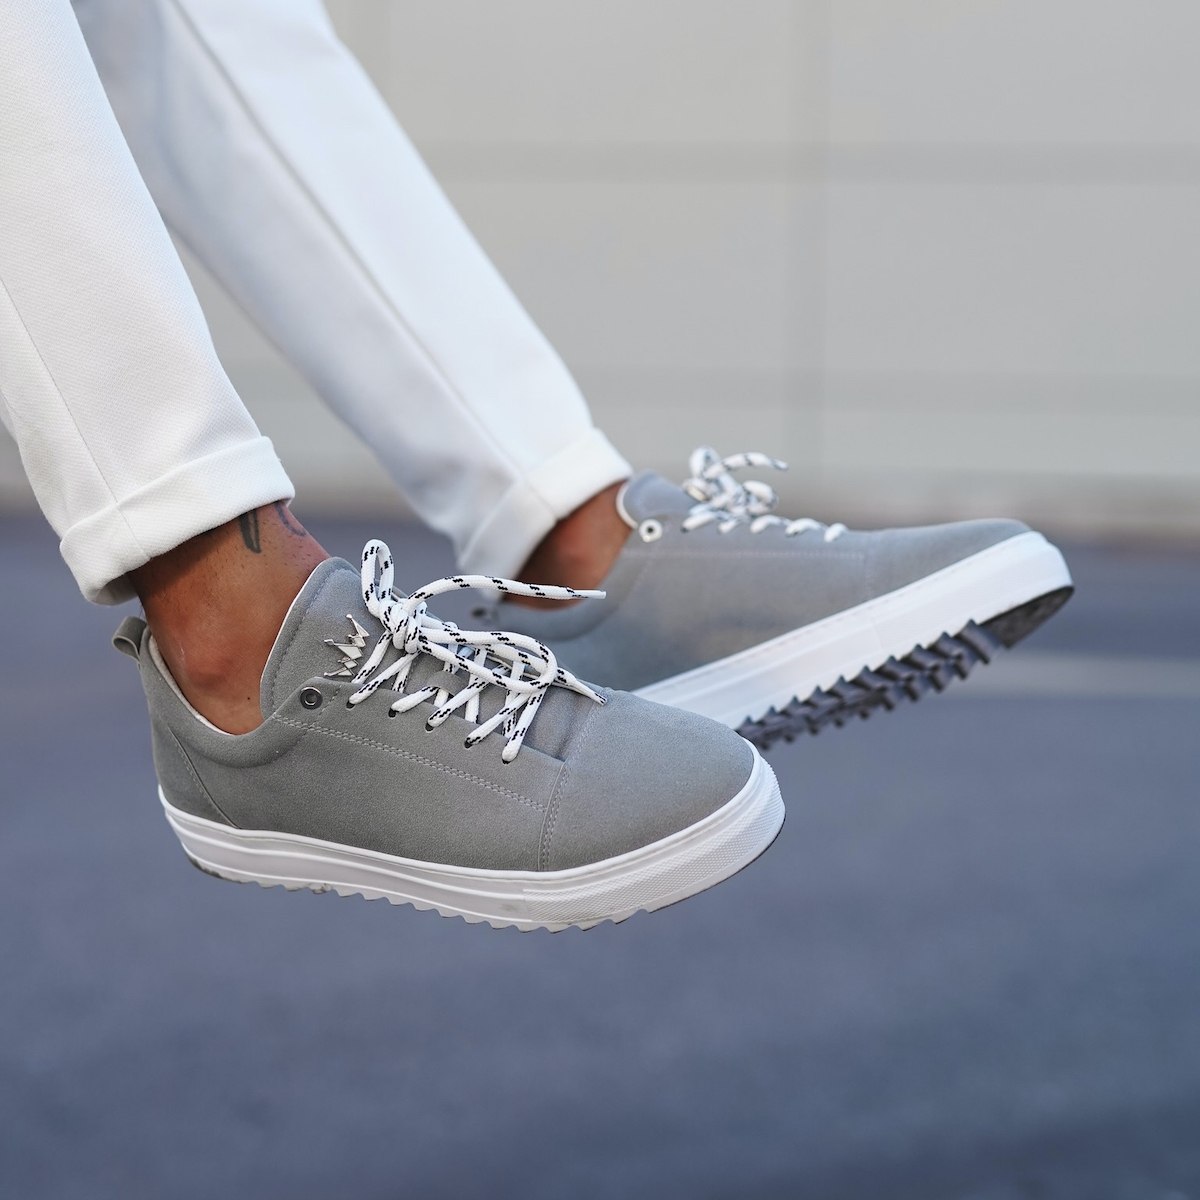 Men's Sneakers In Gray